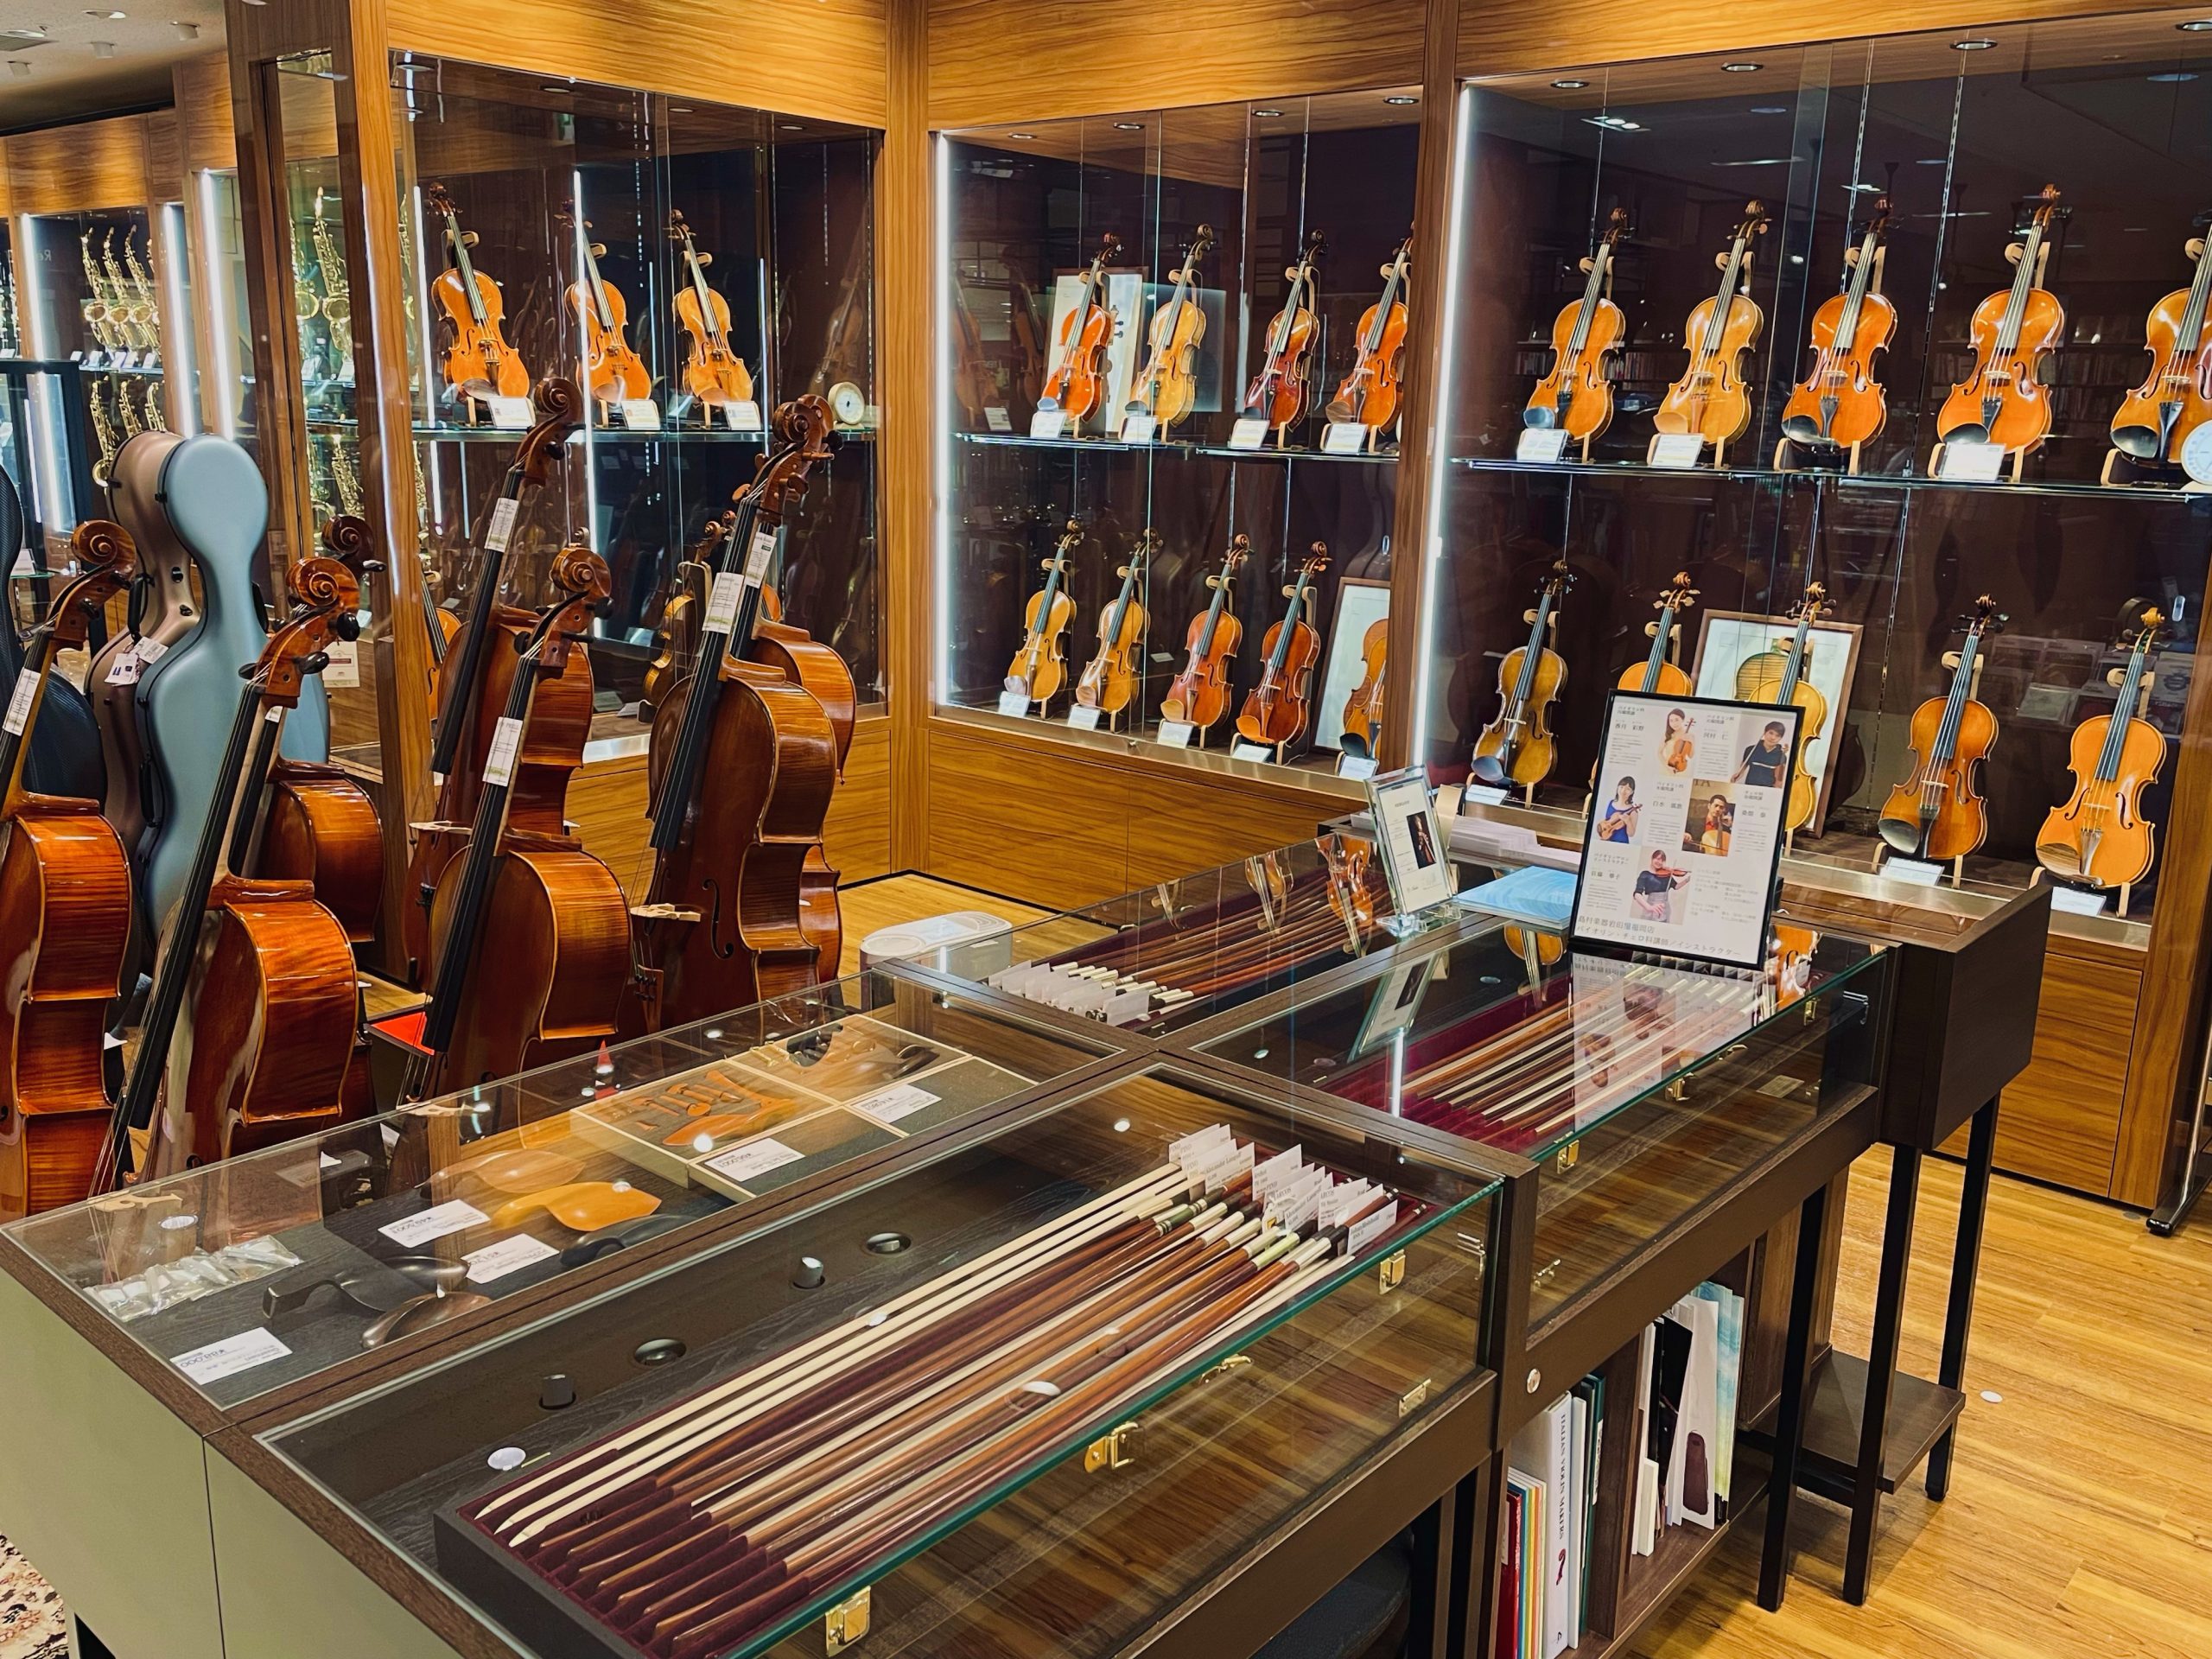 *島村楽器九州地区唯一の弦楽器専門店 当店はヴァイオリン/バイオリン、ビオラ、チェロ、弓、ケース、松脂、肩当など弦楽器に関連する商品を専門的に扱っております。お求めやすい価格の入門用ビギナーセットから海外工房製の一点ものまで幅広い品揃えで展示致しております。]]また常駐リペアマンによる迅速な修理・調 […]